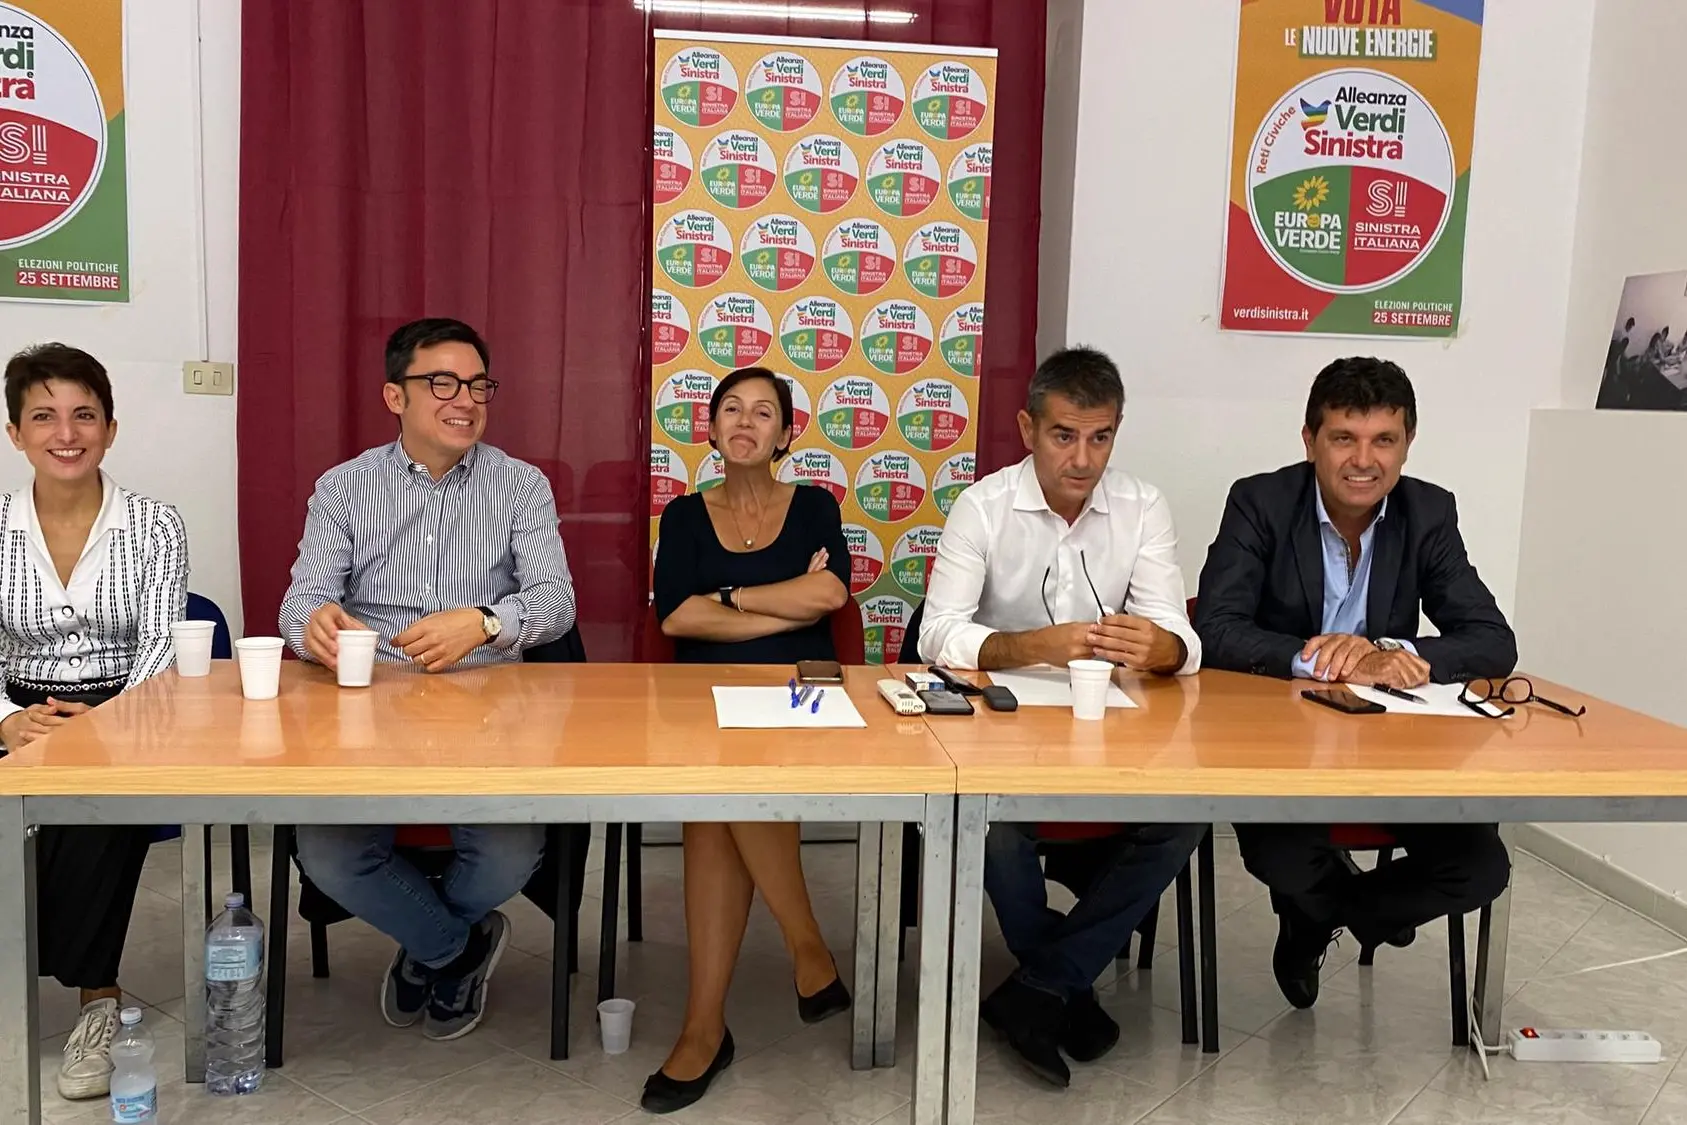 La conferenza stampa dei Progressisti (foto L'Unione Sarda)